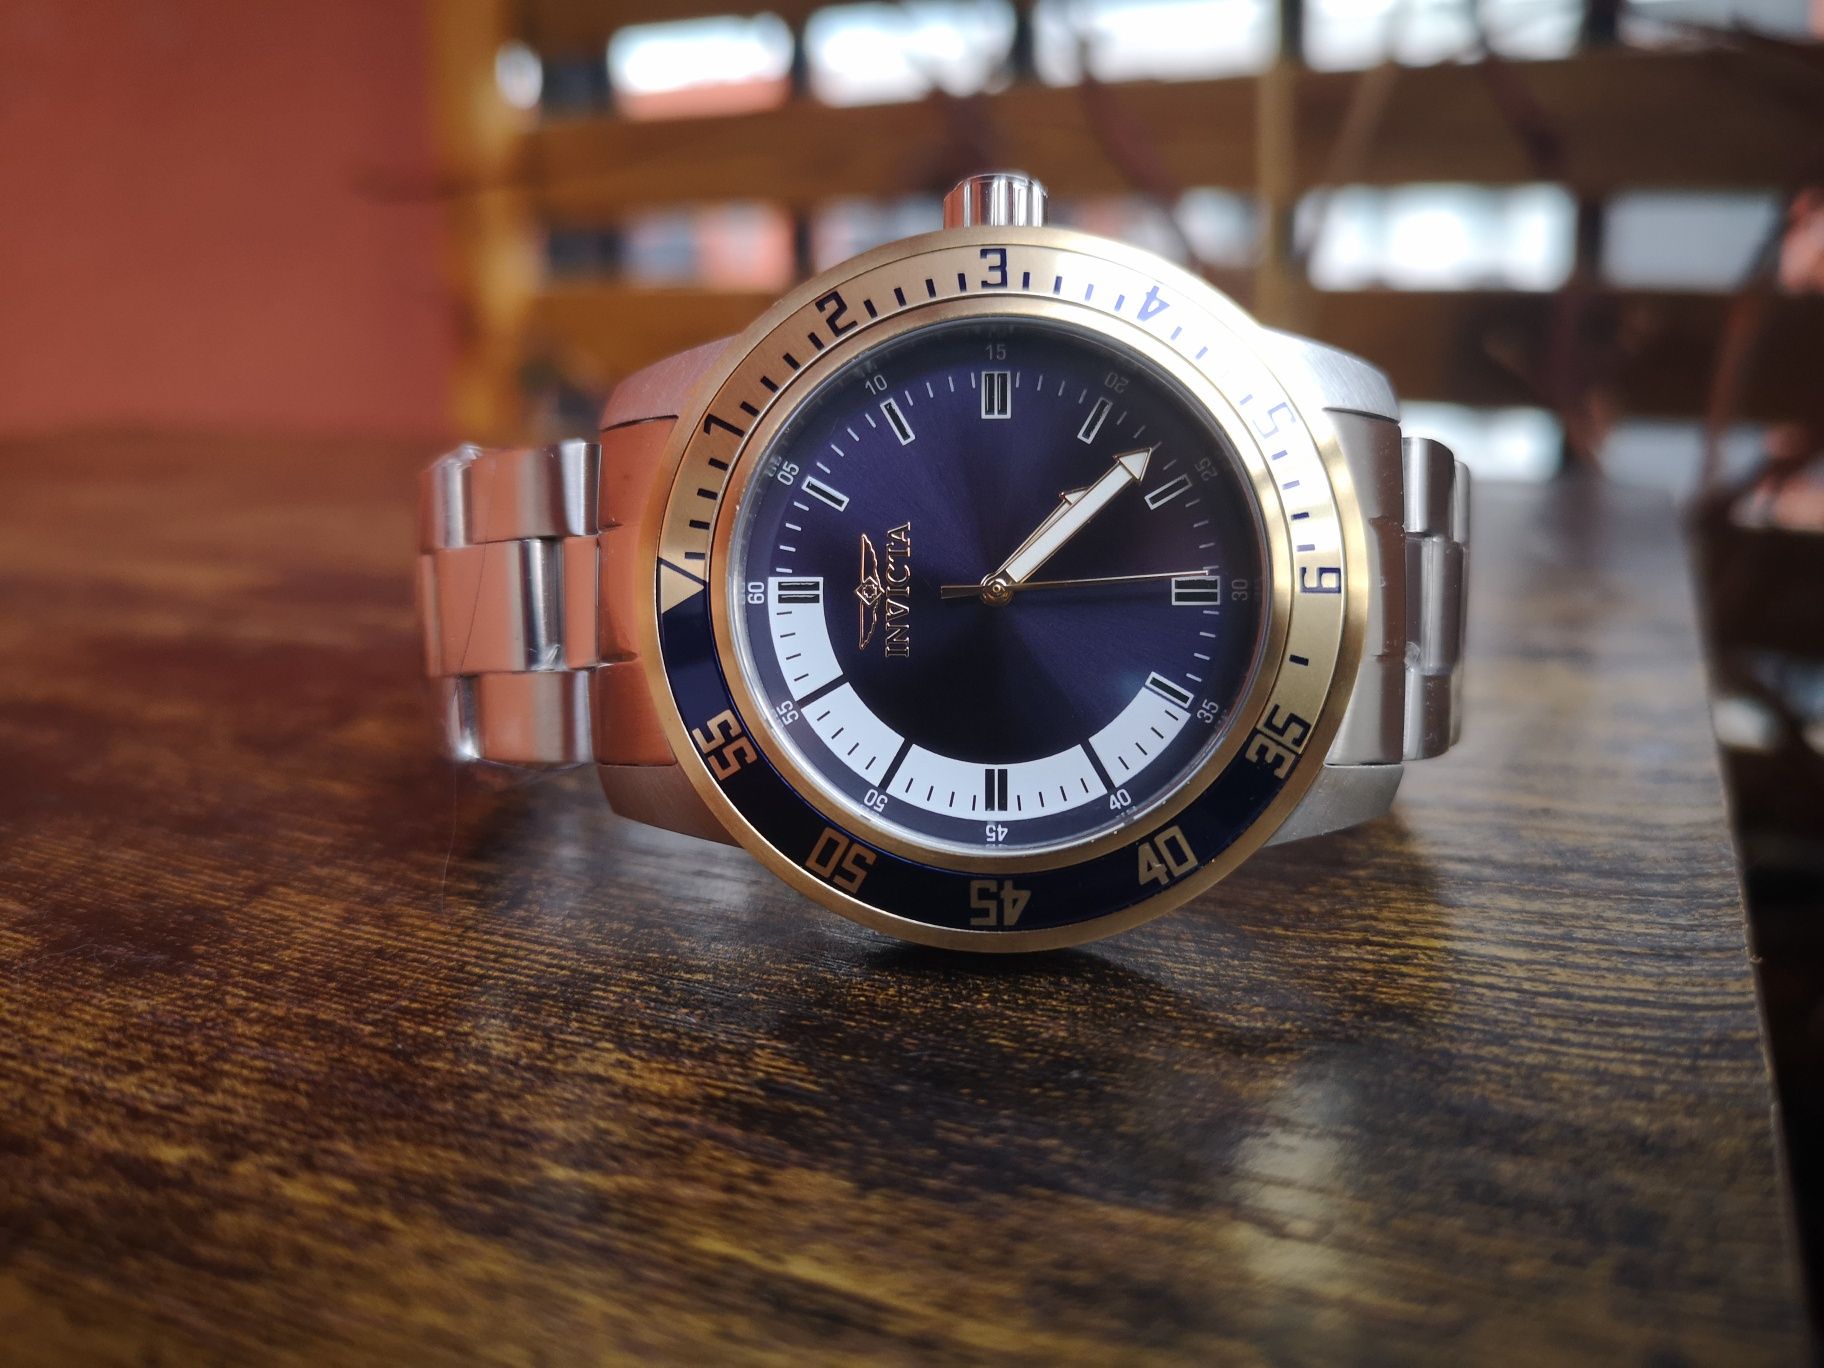 Nowy zegarek Invicta 38592 Specialty TMI PC21 pełen komplet fabryczny